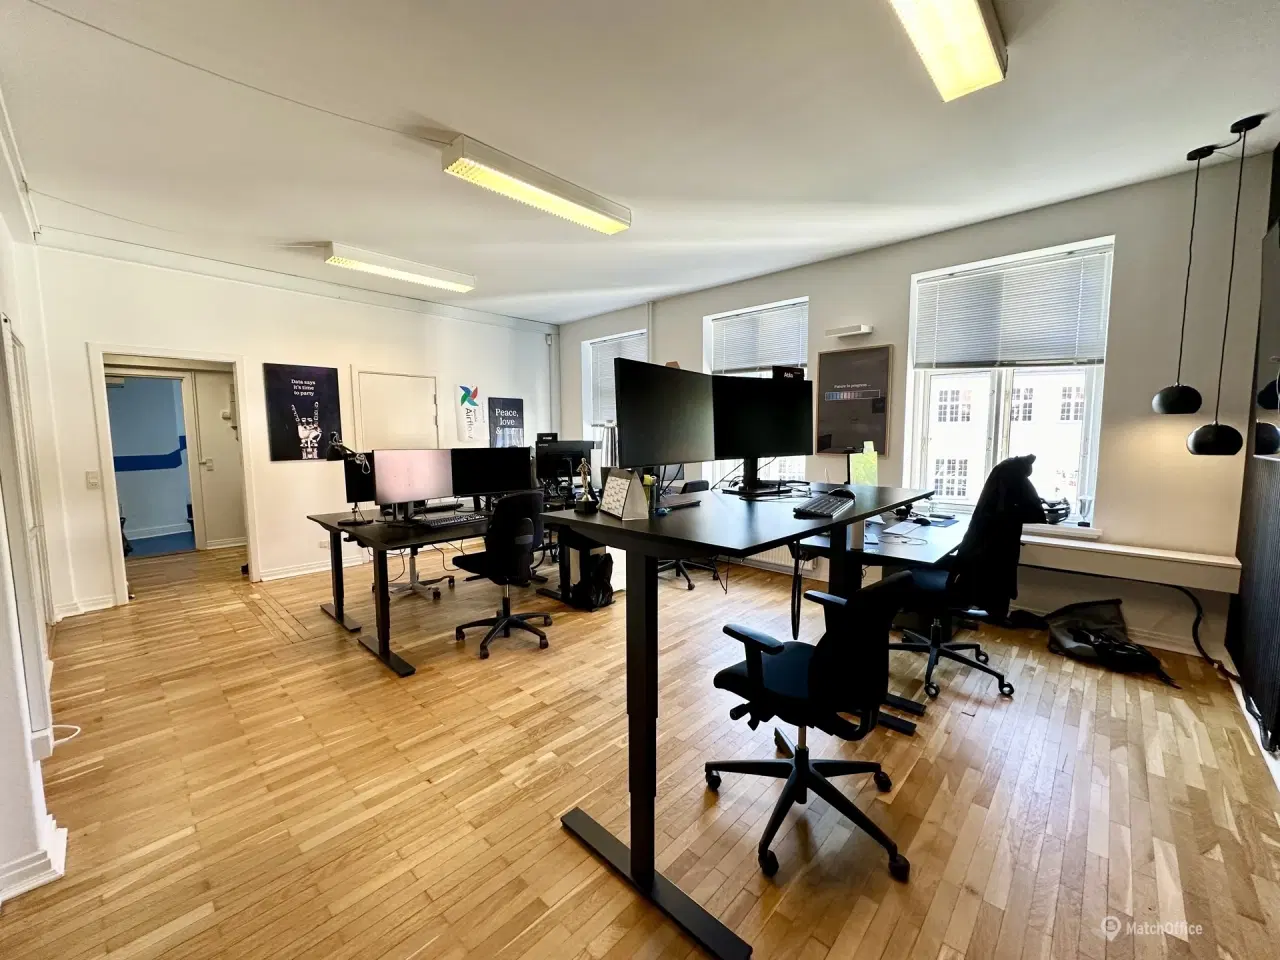 Billede 5 - 146 m² kontorlokaler beliggende i Nedergade-kvarteret udlejes!